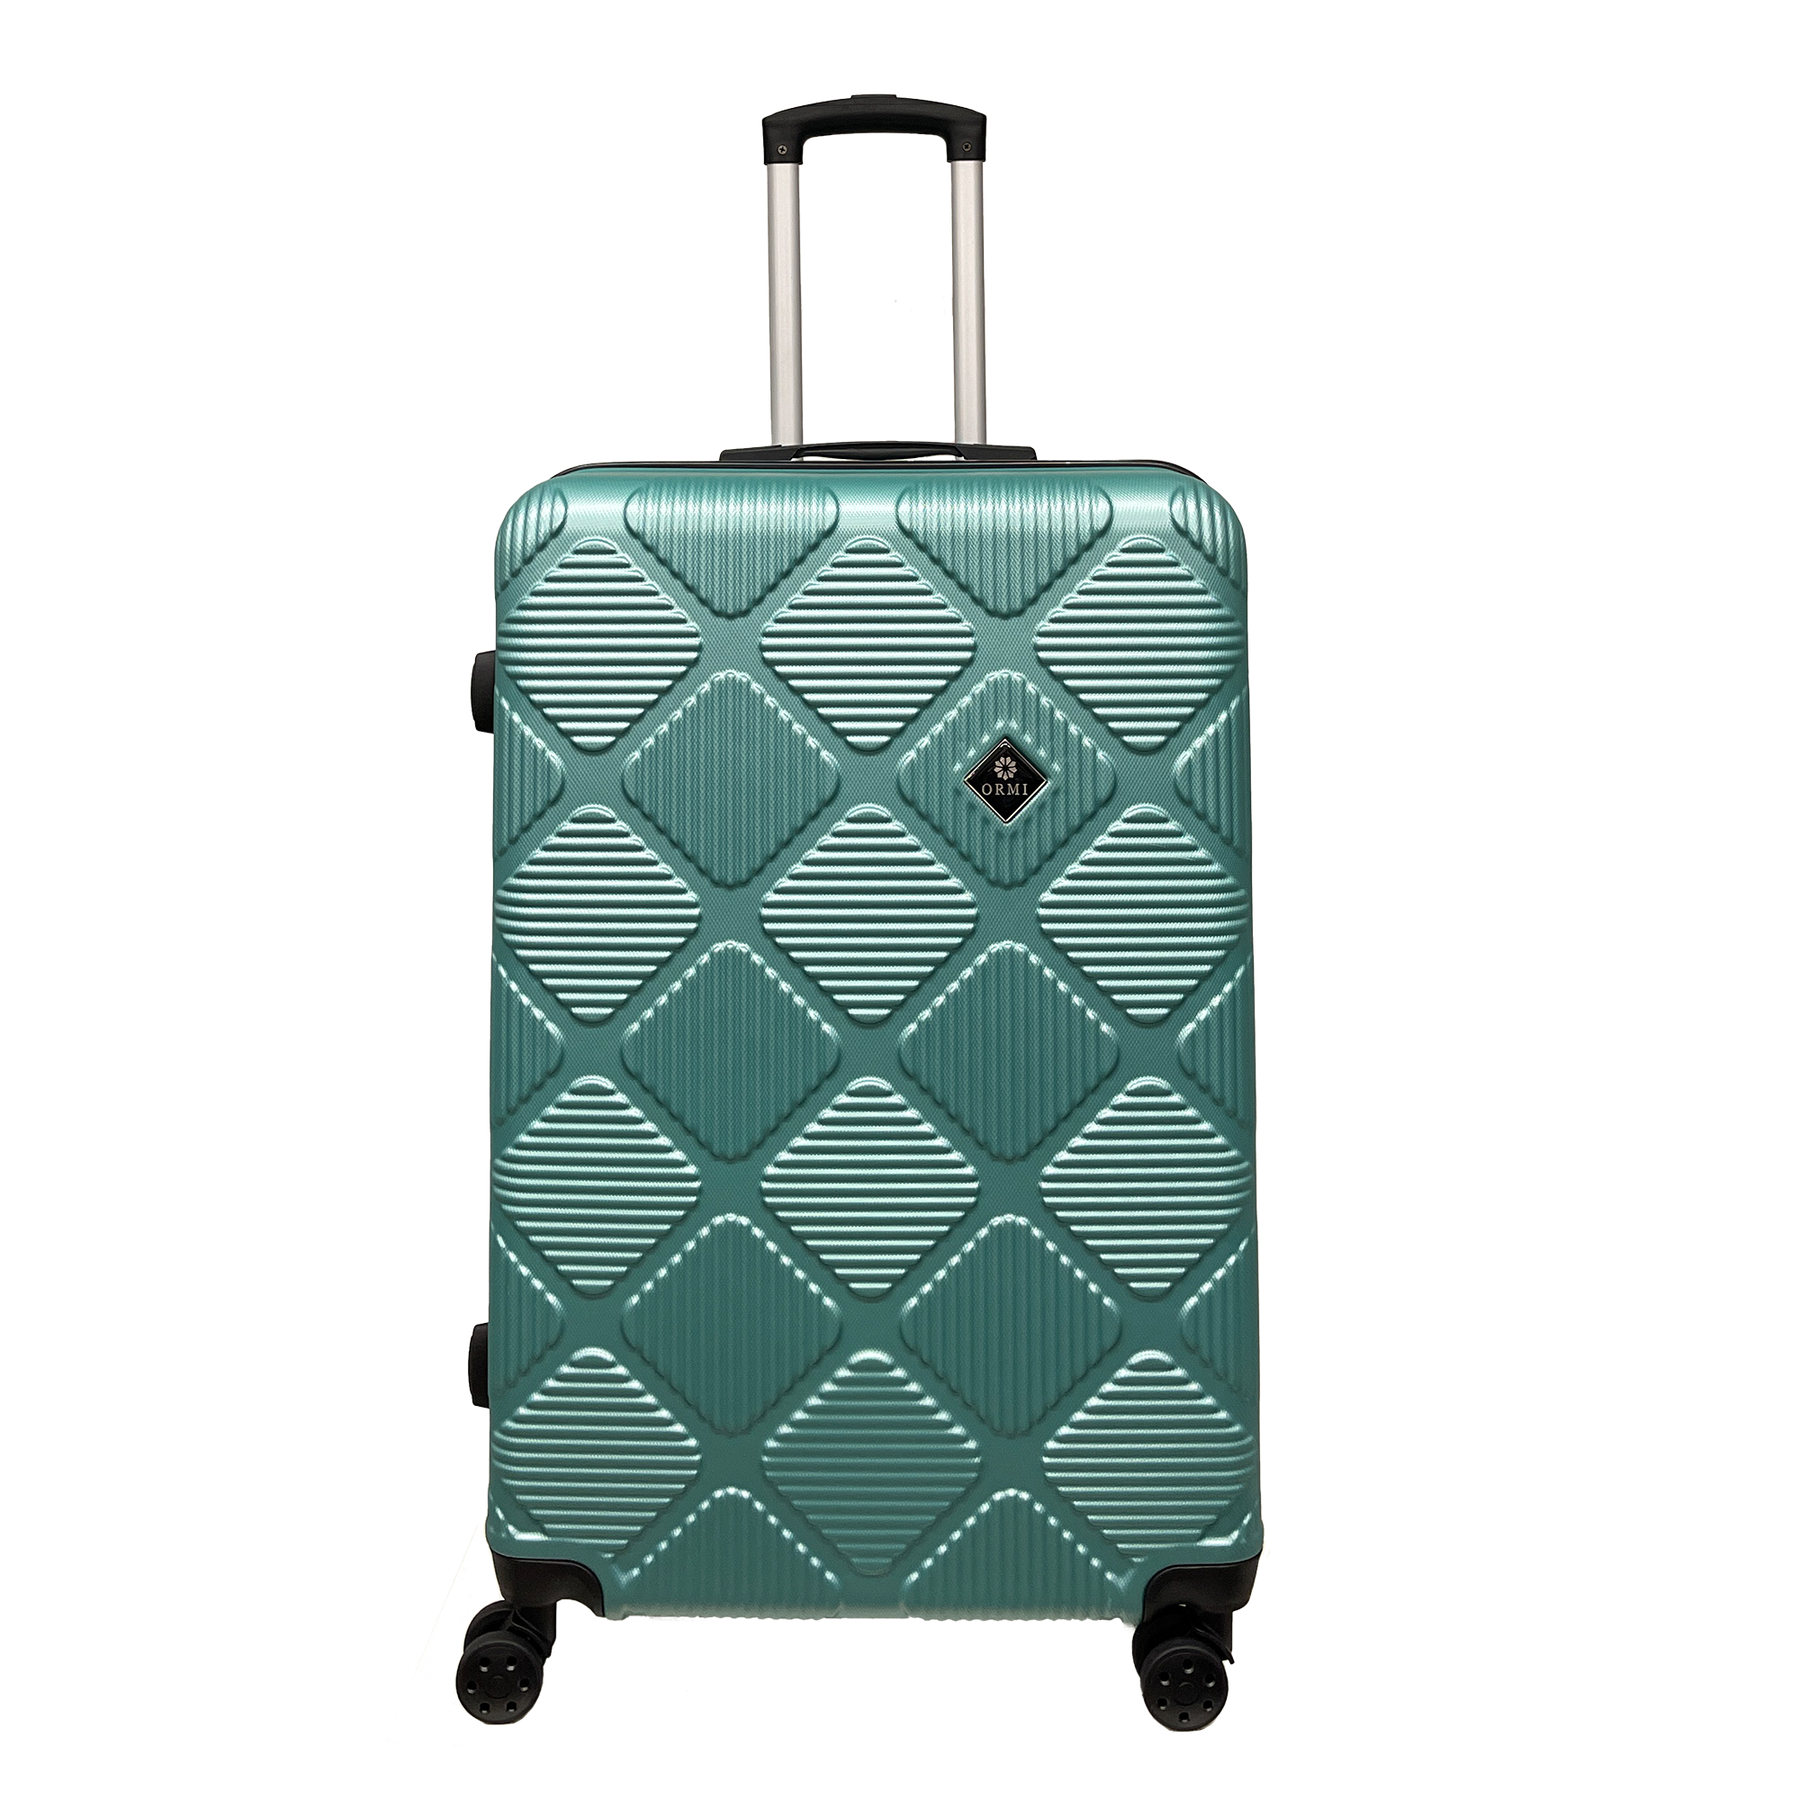 Ormi Diamond Lux: Iso matkalaukku 75x50x30 cm, Kova kuori ja erittäin kevyt, 8 dynaamista 360° pyörää
